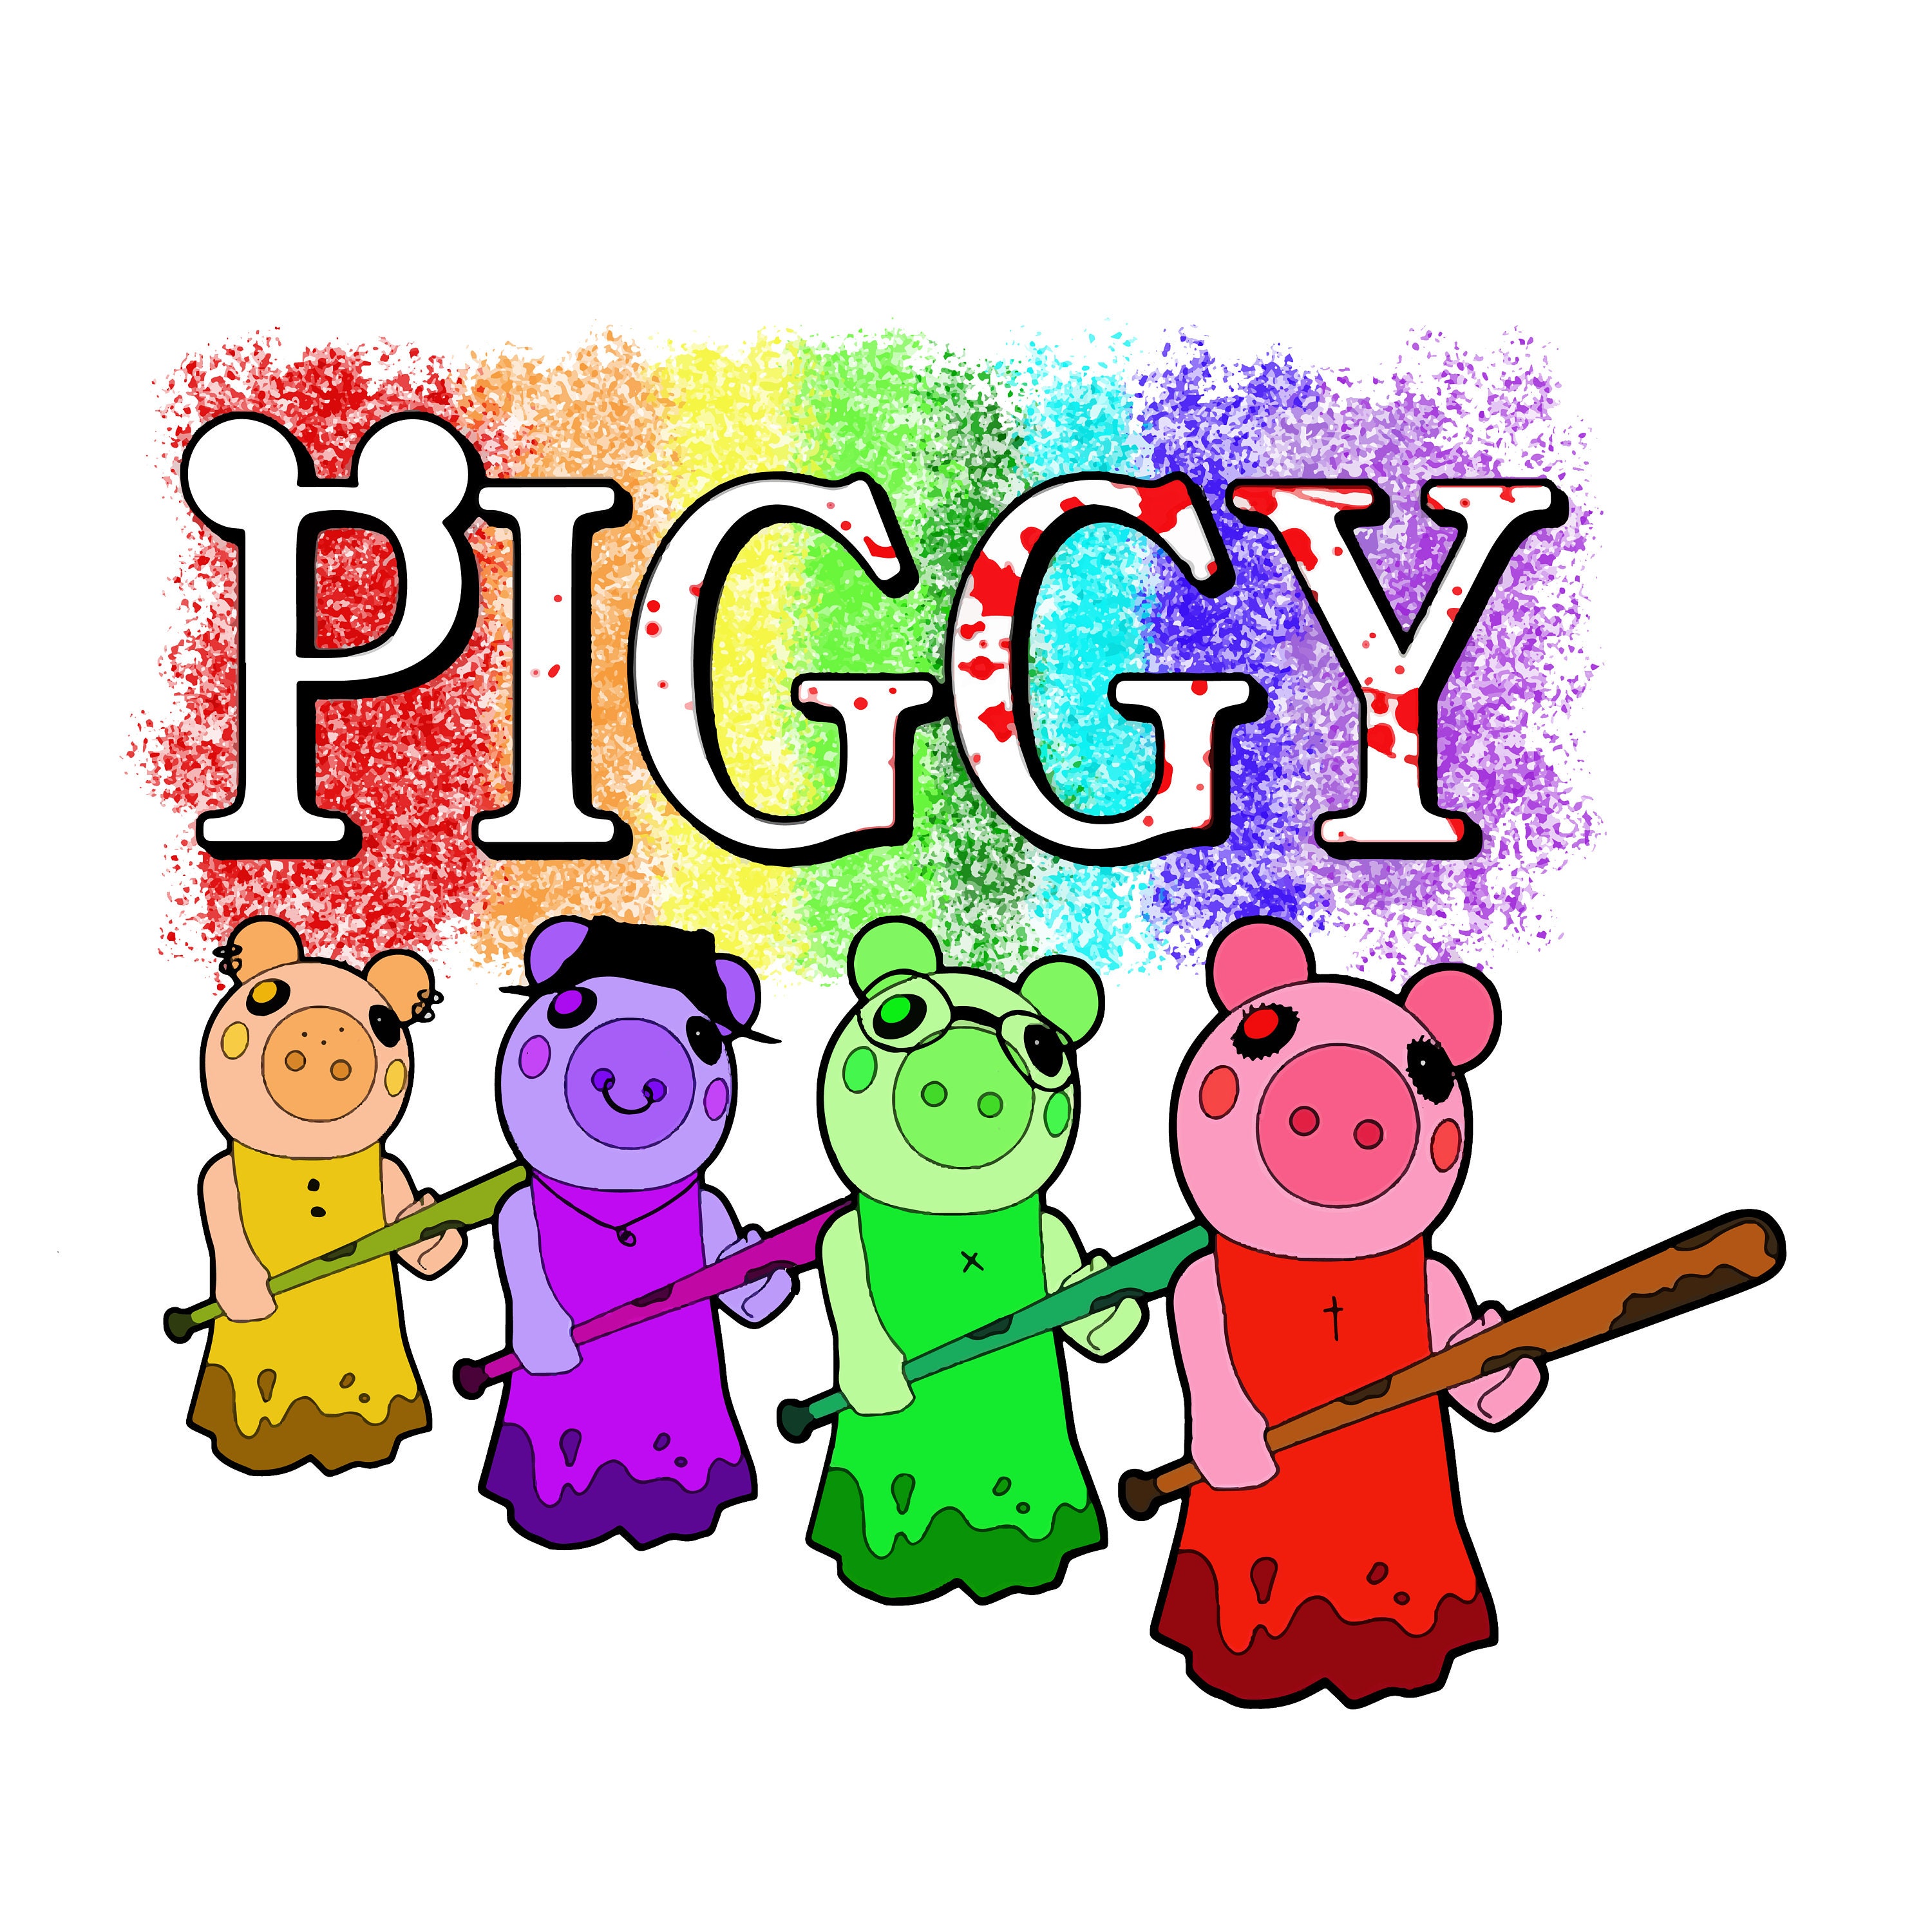 piggy logo roblox png cutout PNG & clipart images